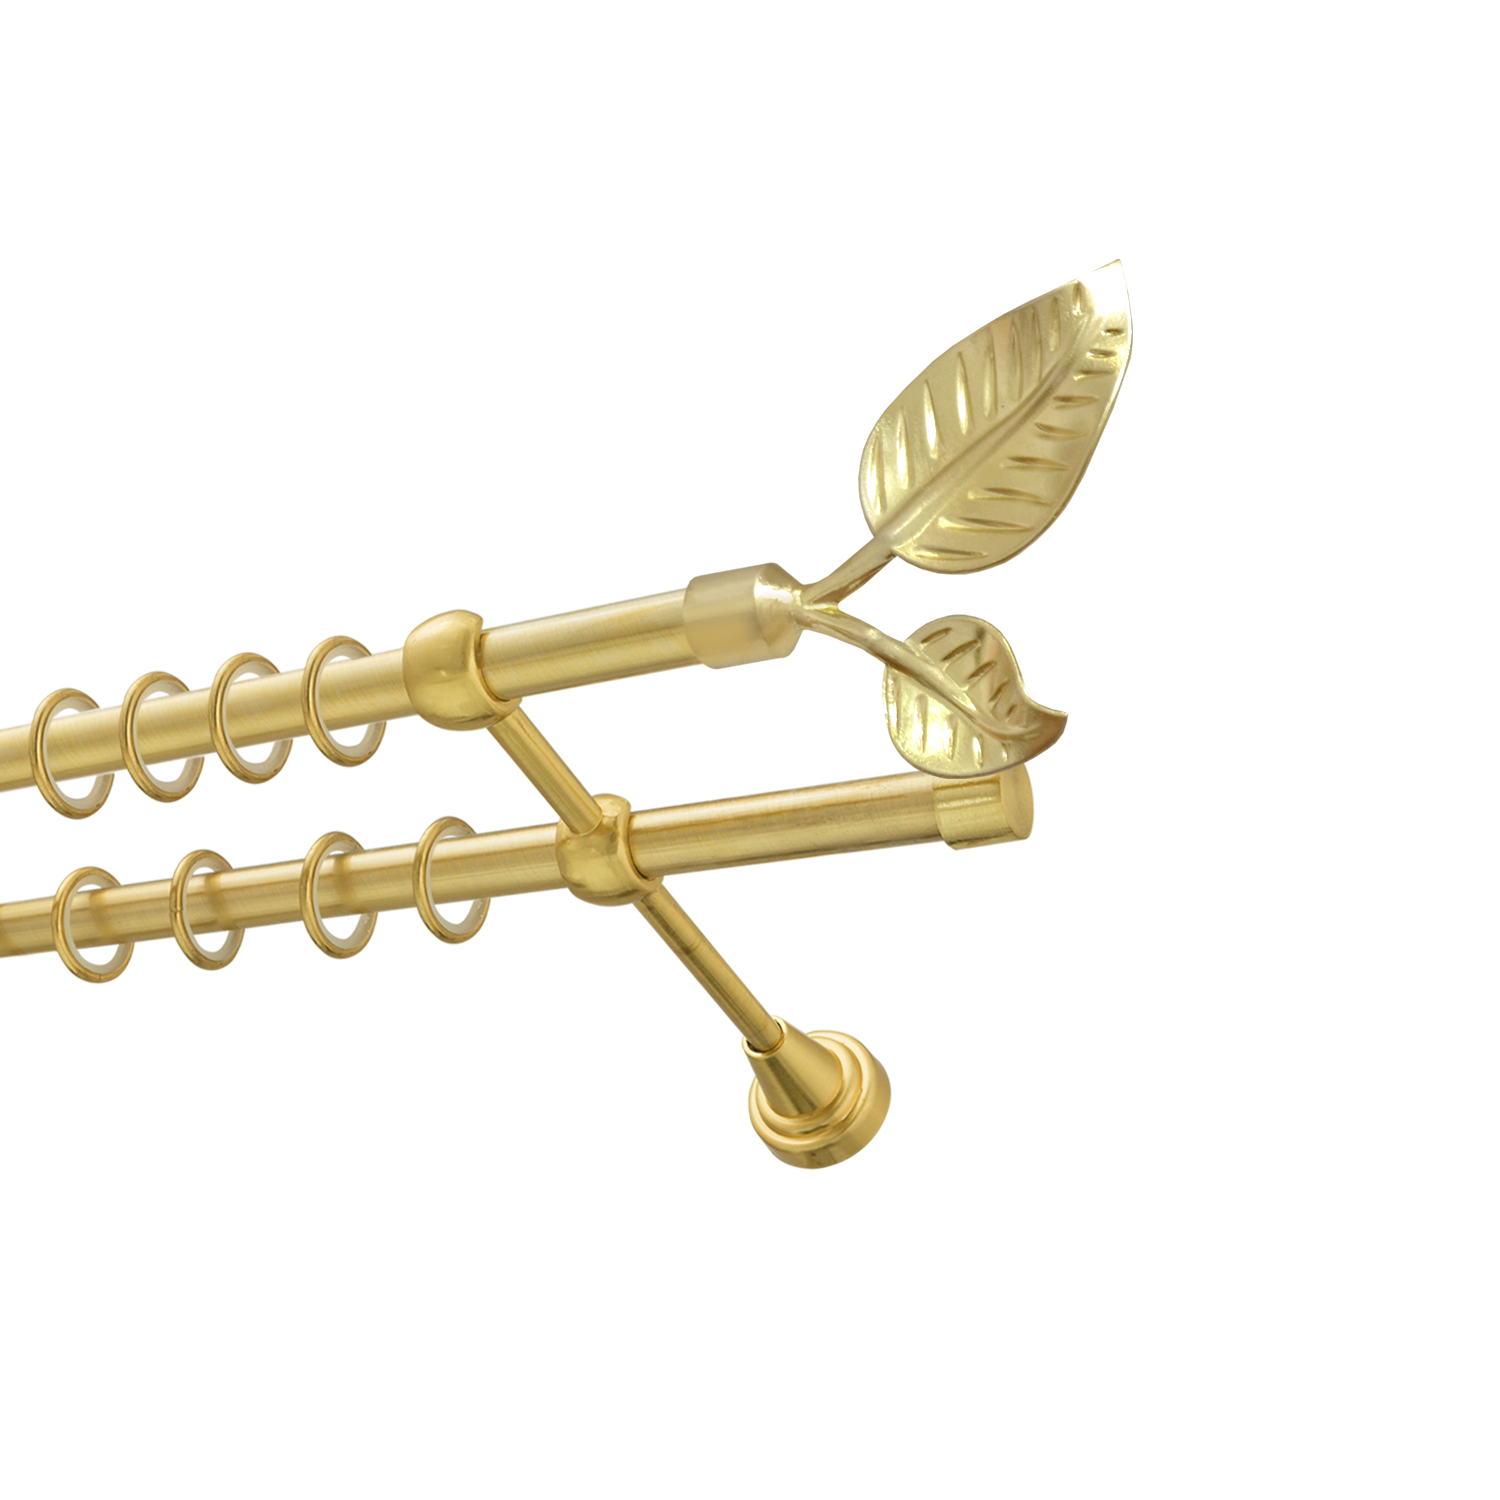 Металлический карниз для штор Тропик, двухрядный 16/16 мм, золото, гладкая штанга, длина 200 см - фото Wikidecor.ru